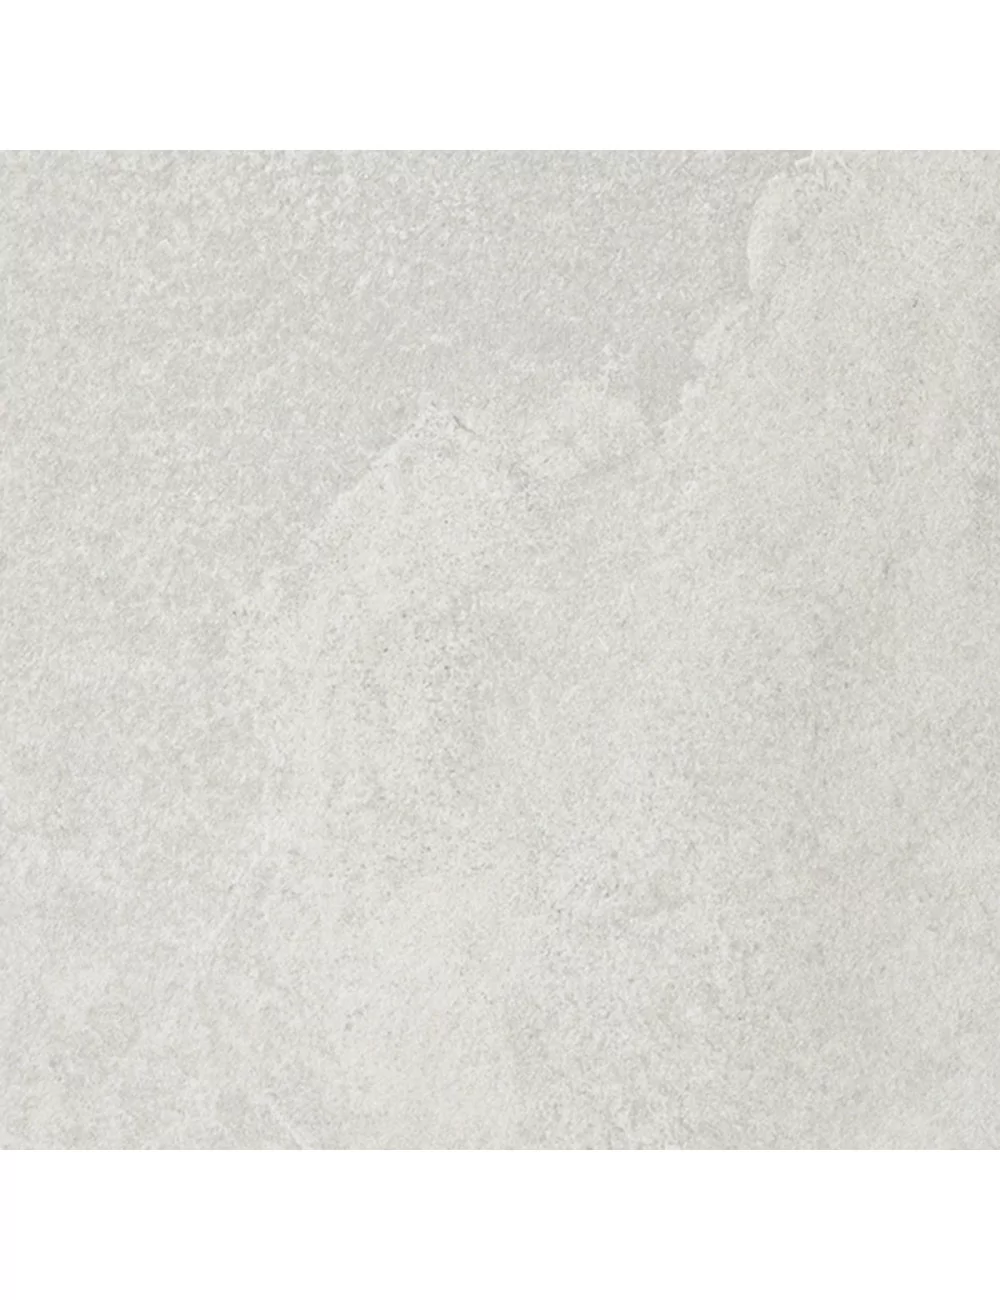 Artica bianco gres effetto pietra con superficie naturale